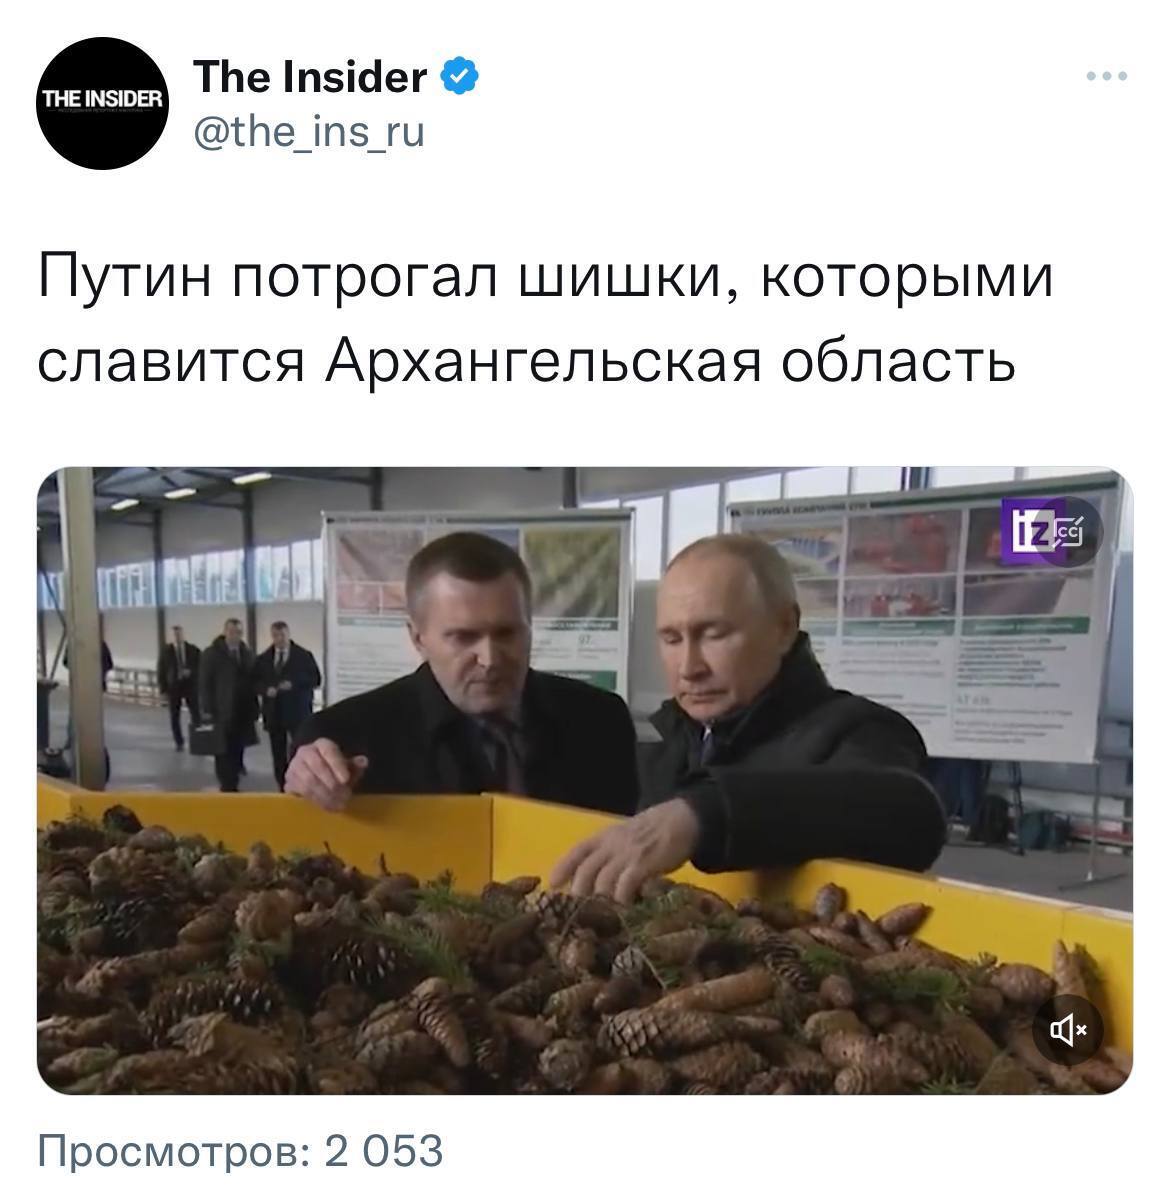 Путин в Архангельской области поиграл с шишками: журналистов, желавших рассказать о "действии", уже допросили. Фото, видео